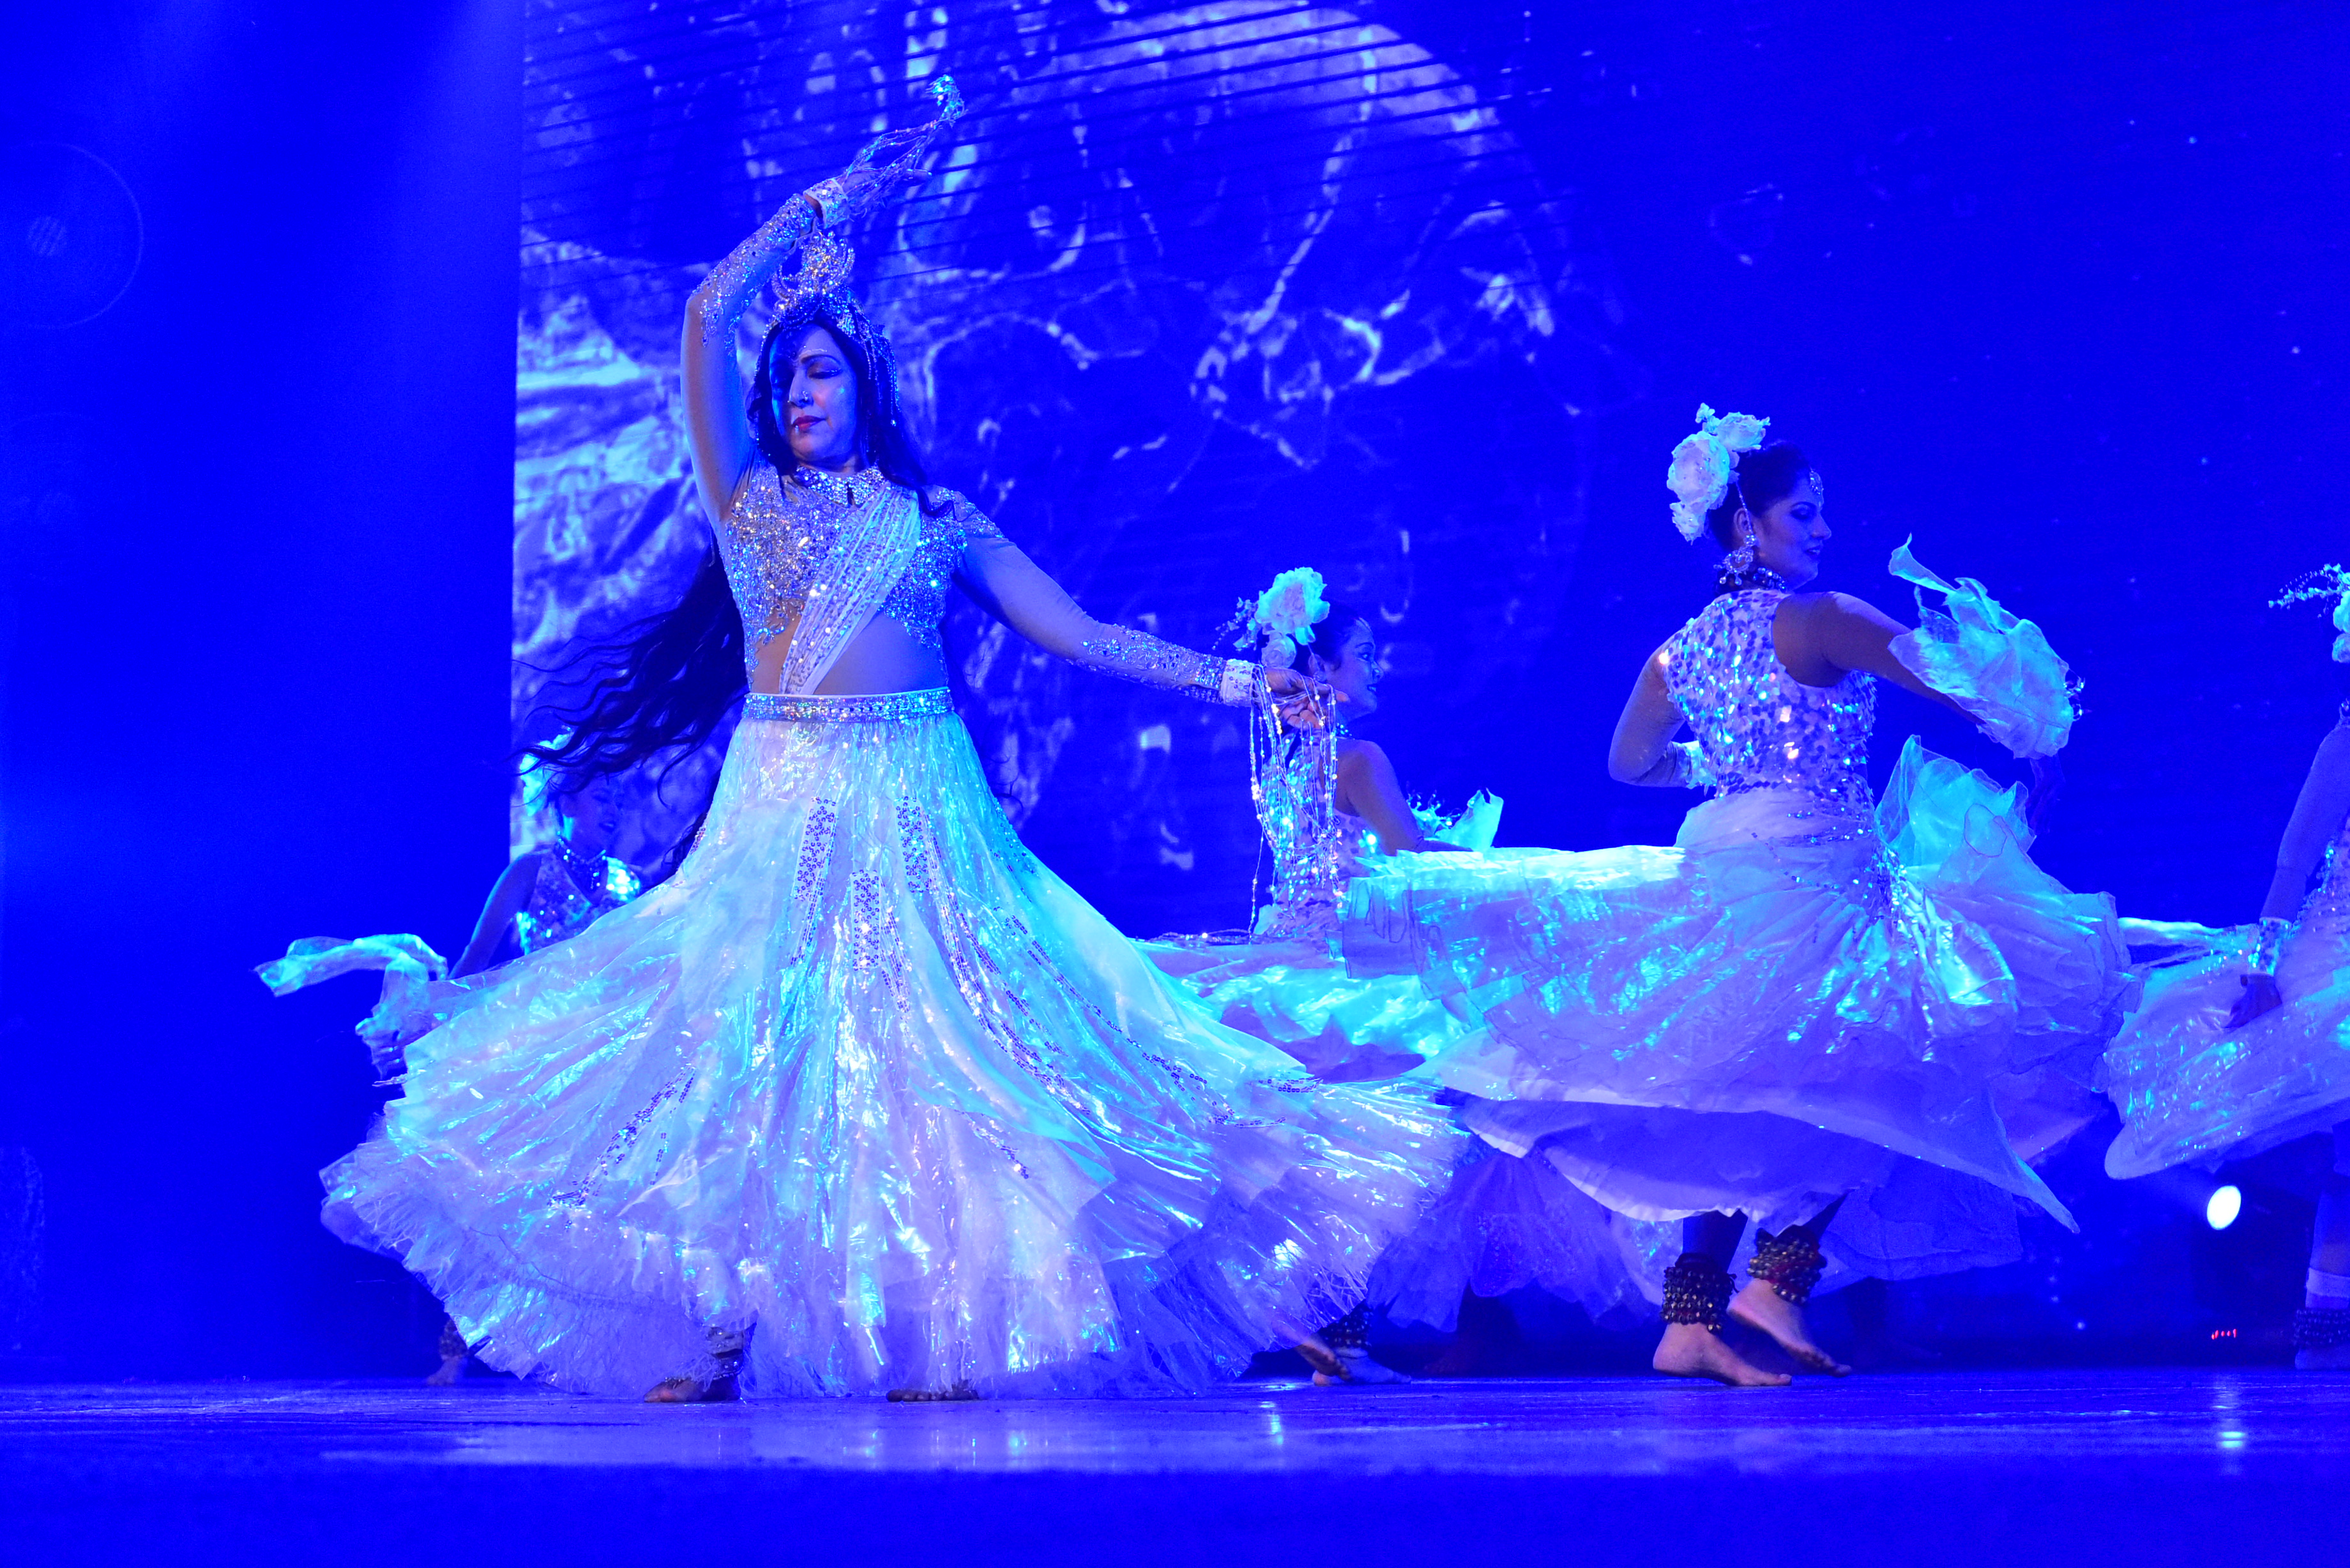 ' गंगा बॅले' शब्द, सूर,नृत्य यांचा अनोखा संगम-हेमामालिनी यांचा पुणे फेस्टिव्हल मध्ये उत्कट नृत्यविष्कार